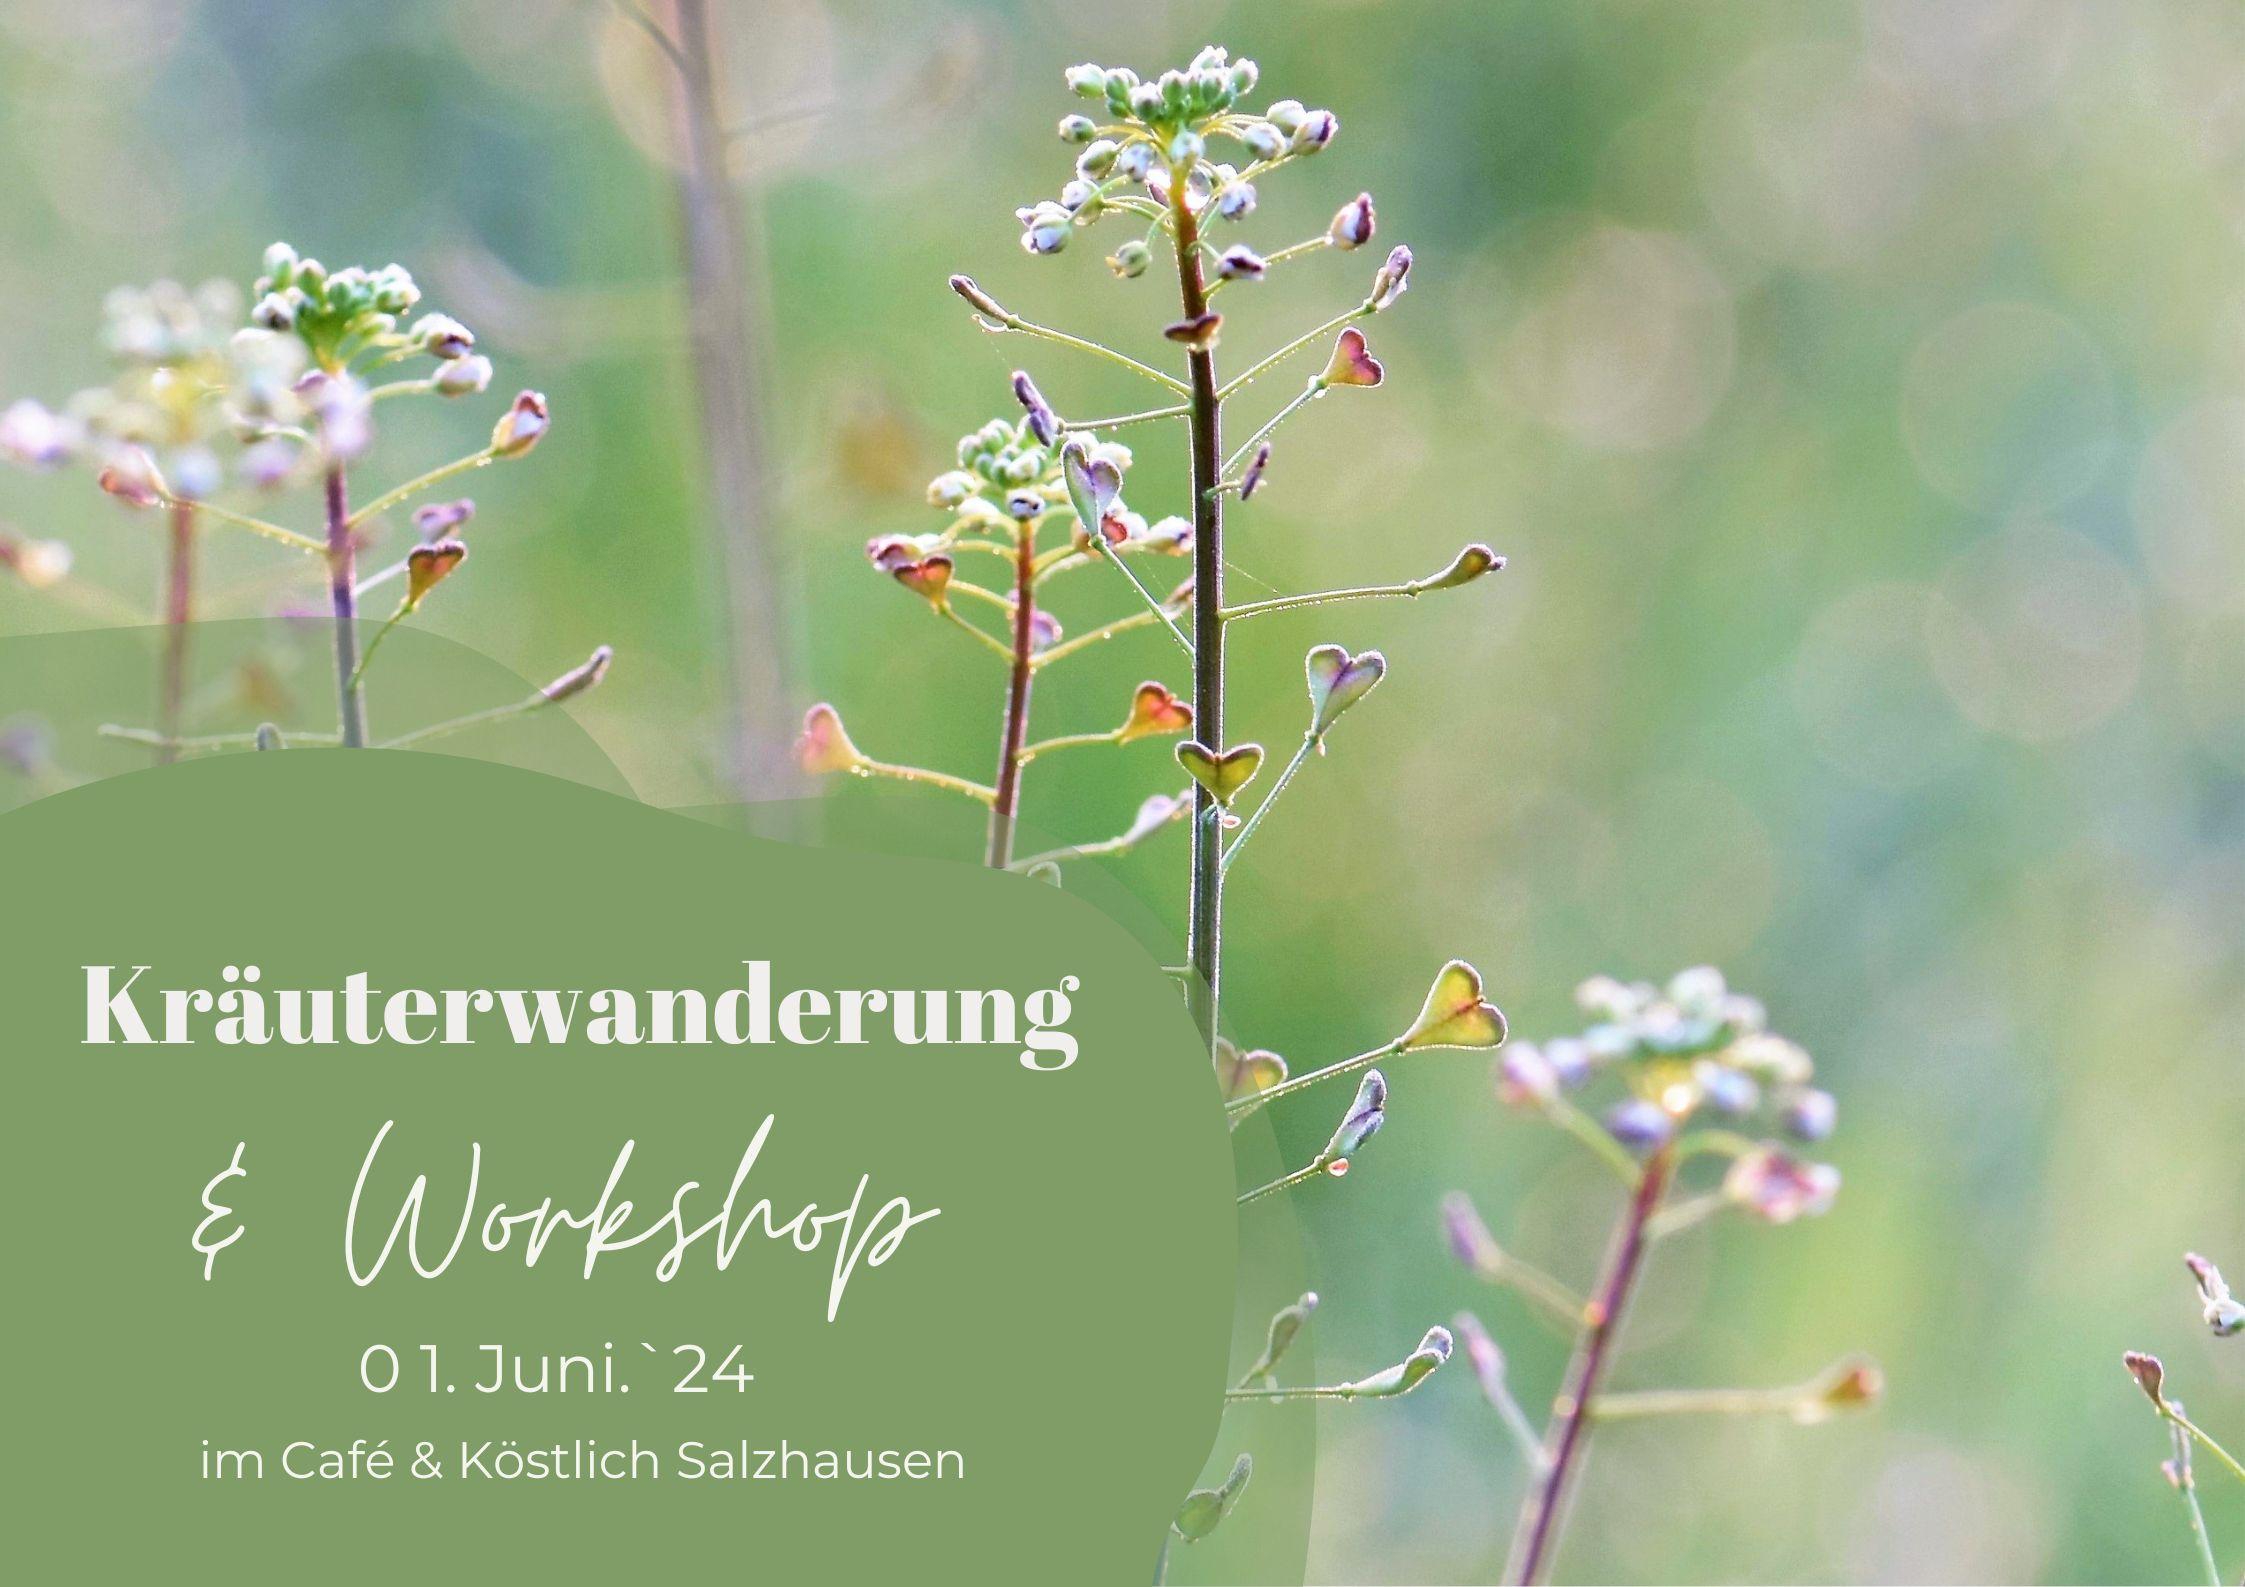 Kräuterwanderung & Workshop "Gesundheit wächst am Wegesrand" - Café & Köstlich